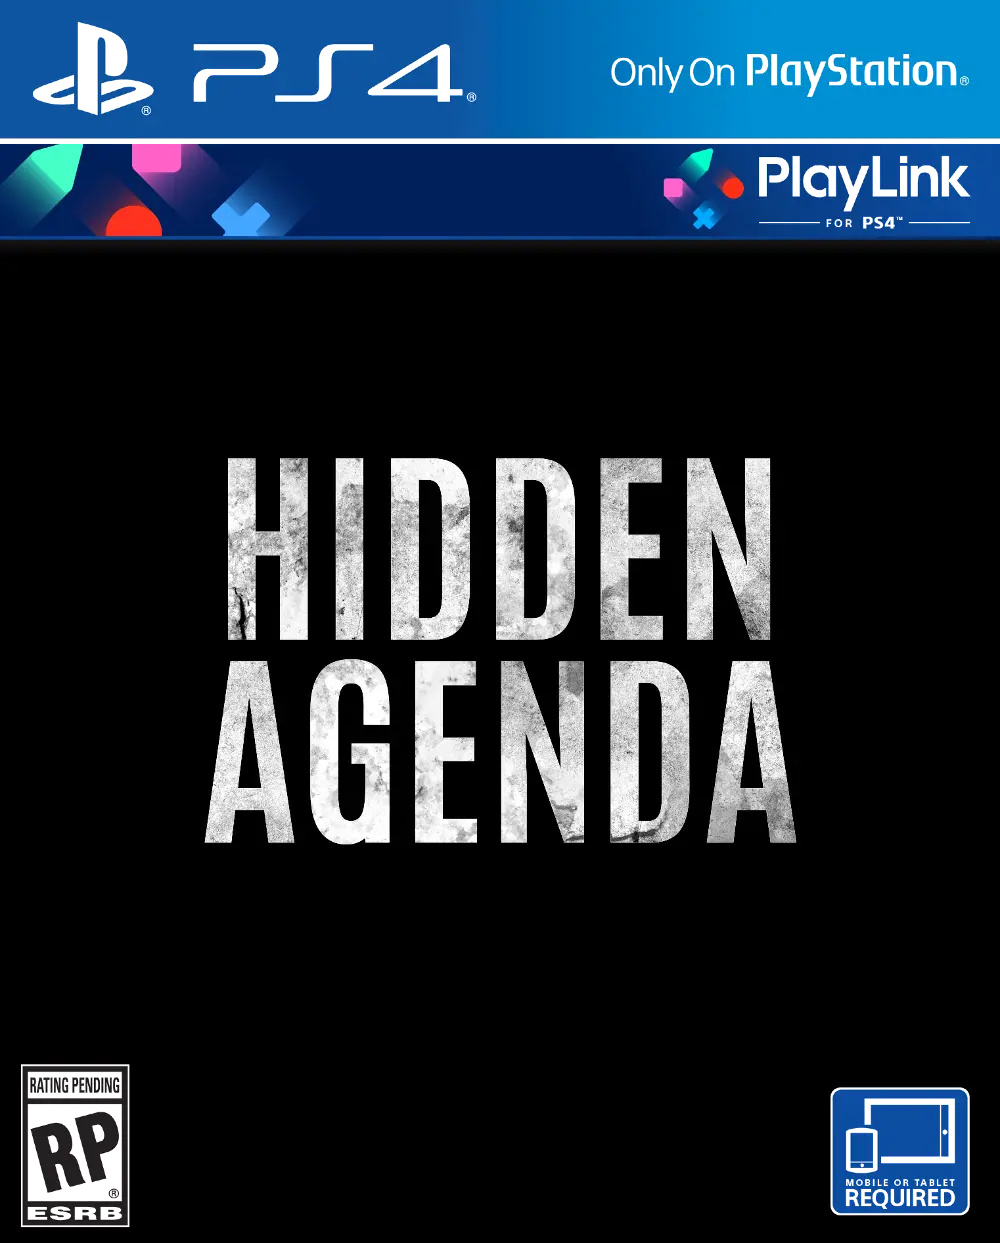 PS4 SCE 302287 Hidden Agenda (PlayLink) - PS4-1